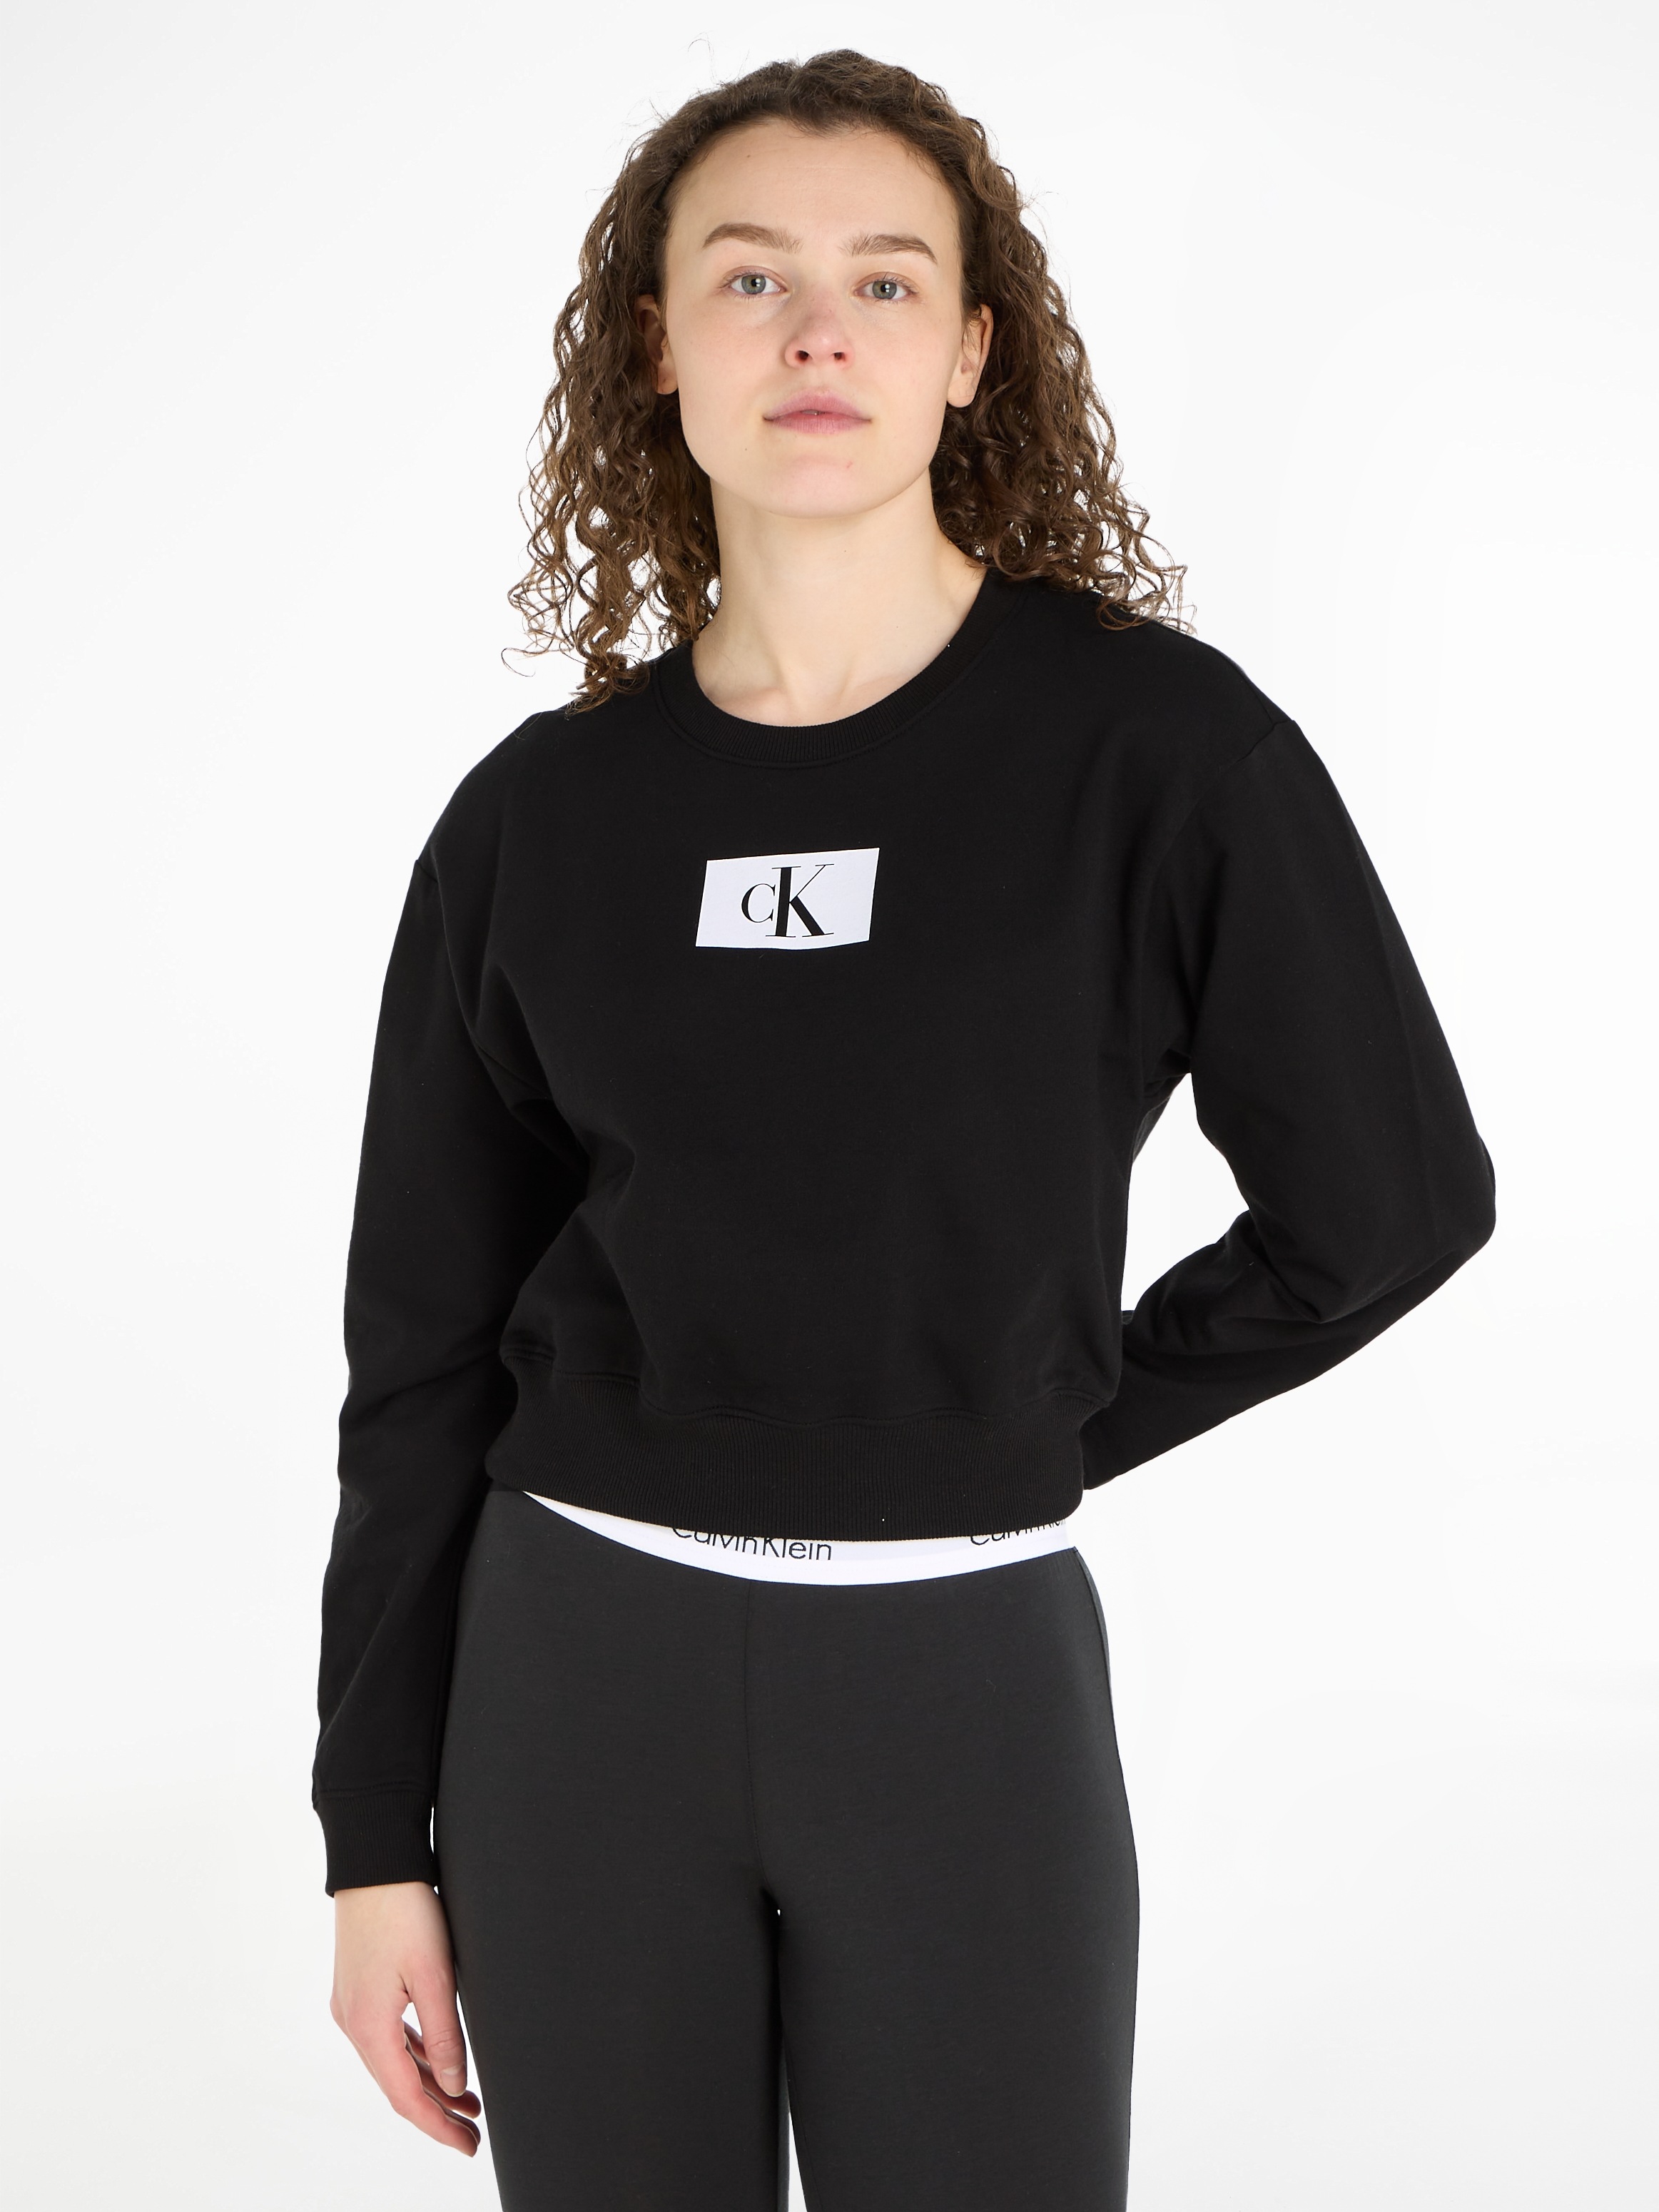 SWEATSHIRT«, Sweatshirt Calvin kaufen »L/S Klein Cropped-Design im